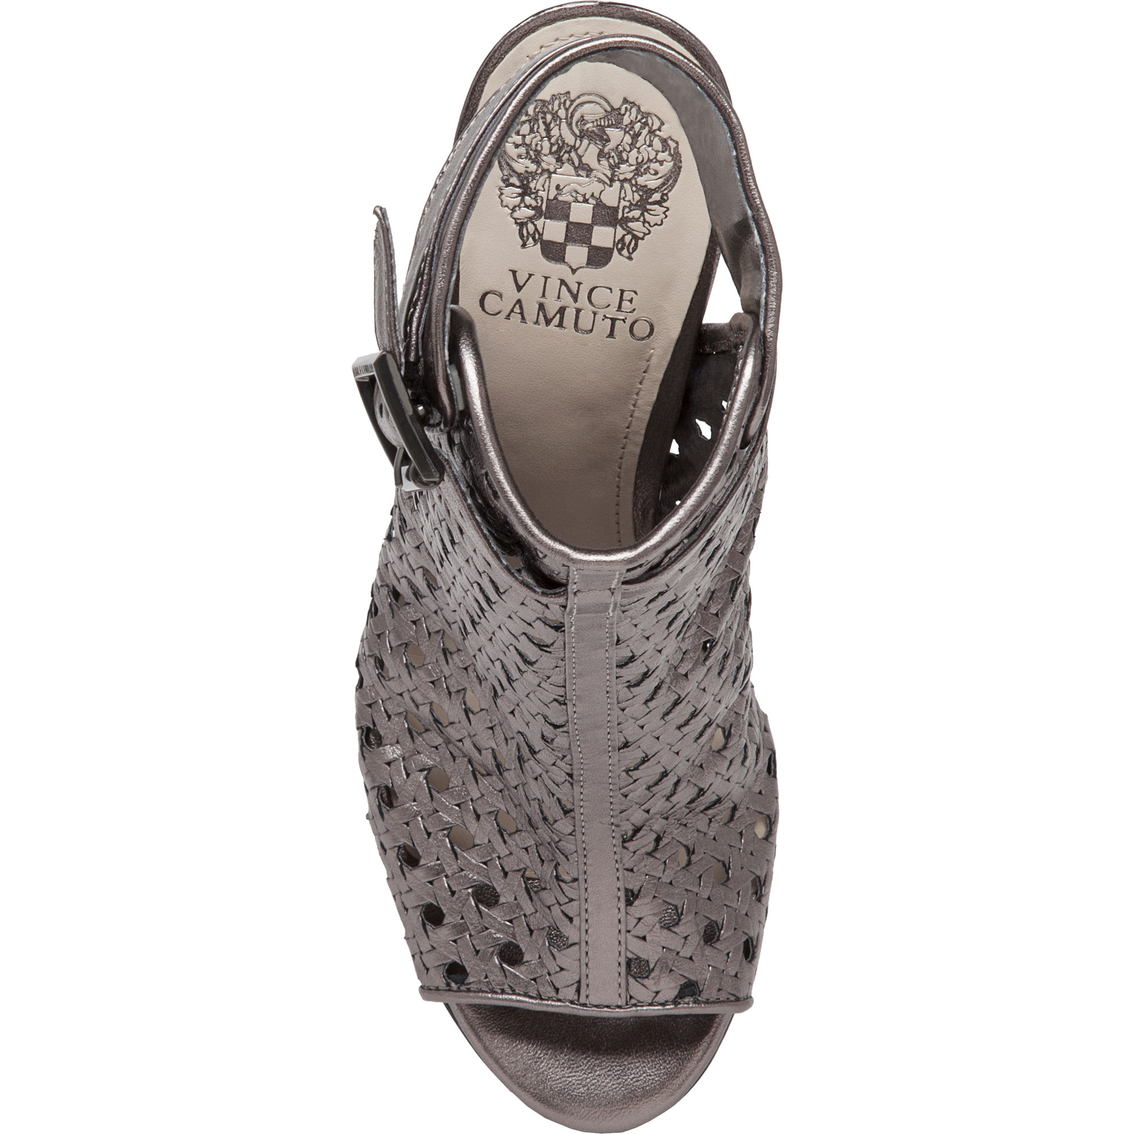 Vince Camuto Karsten Metallic Peep Toe High Heel Sandals | Sandals